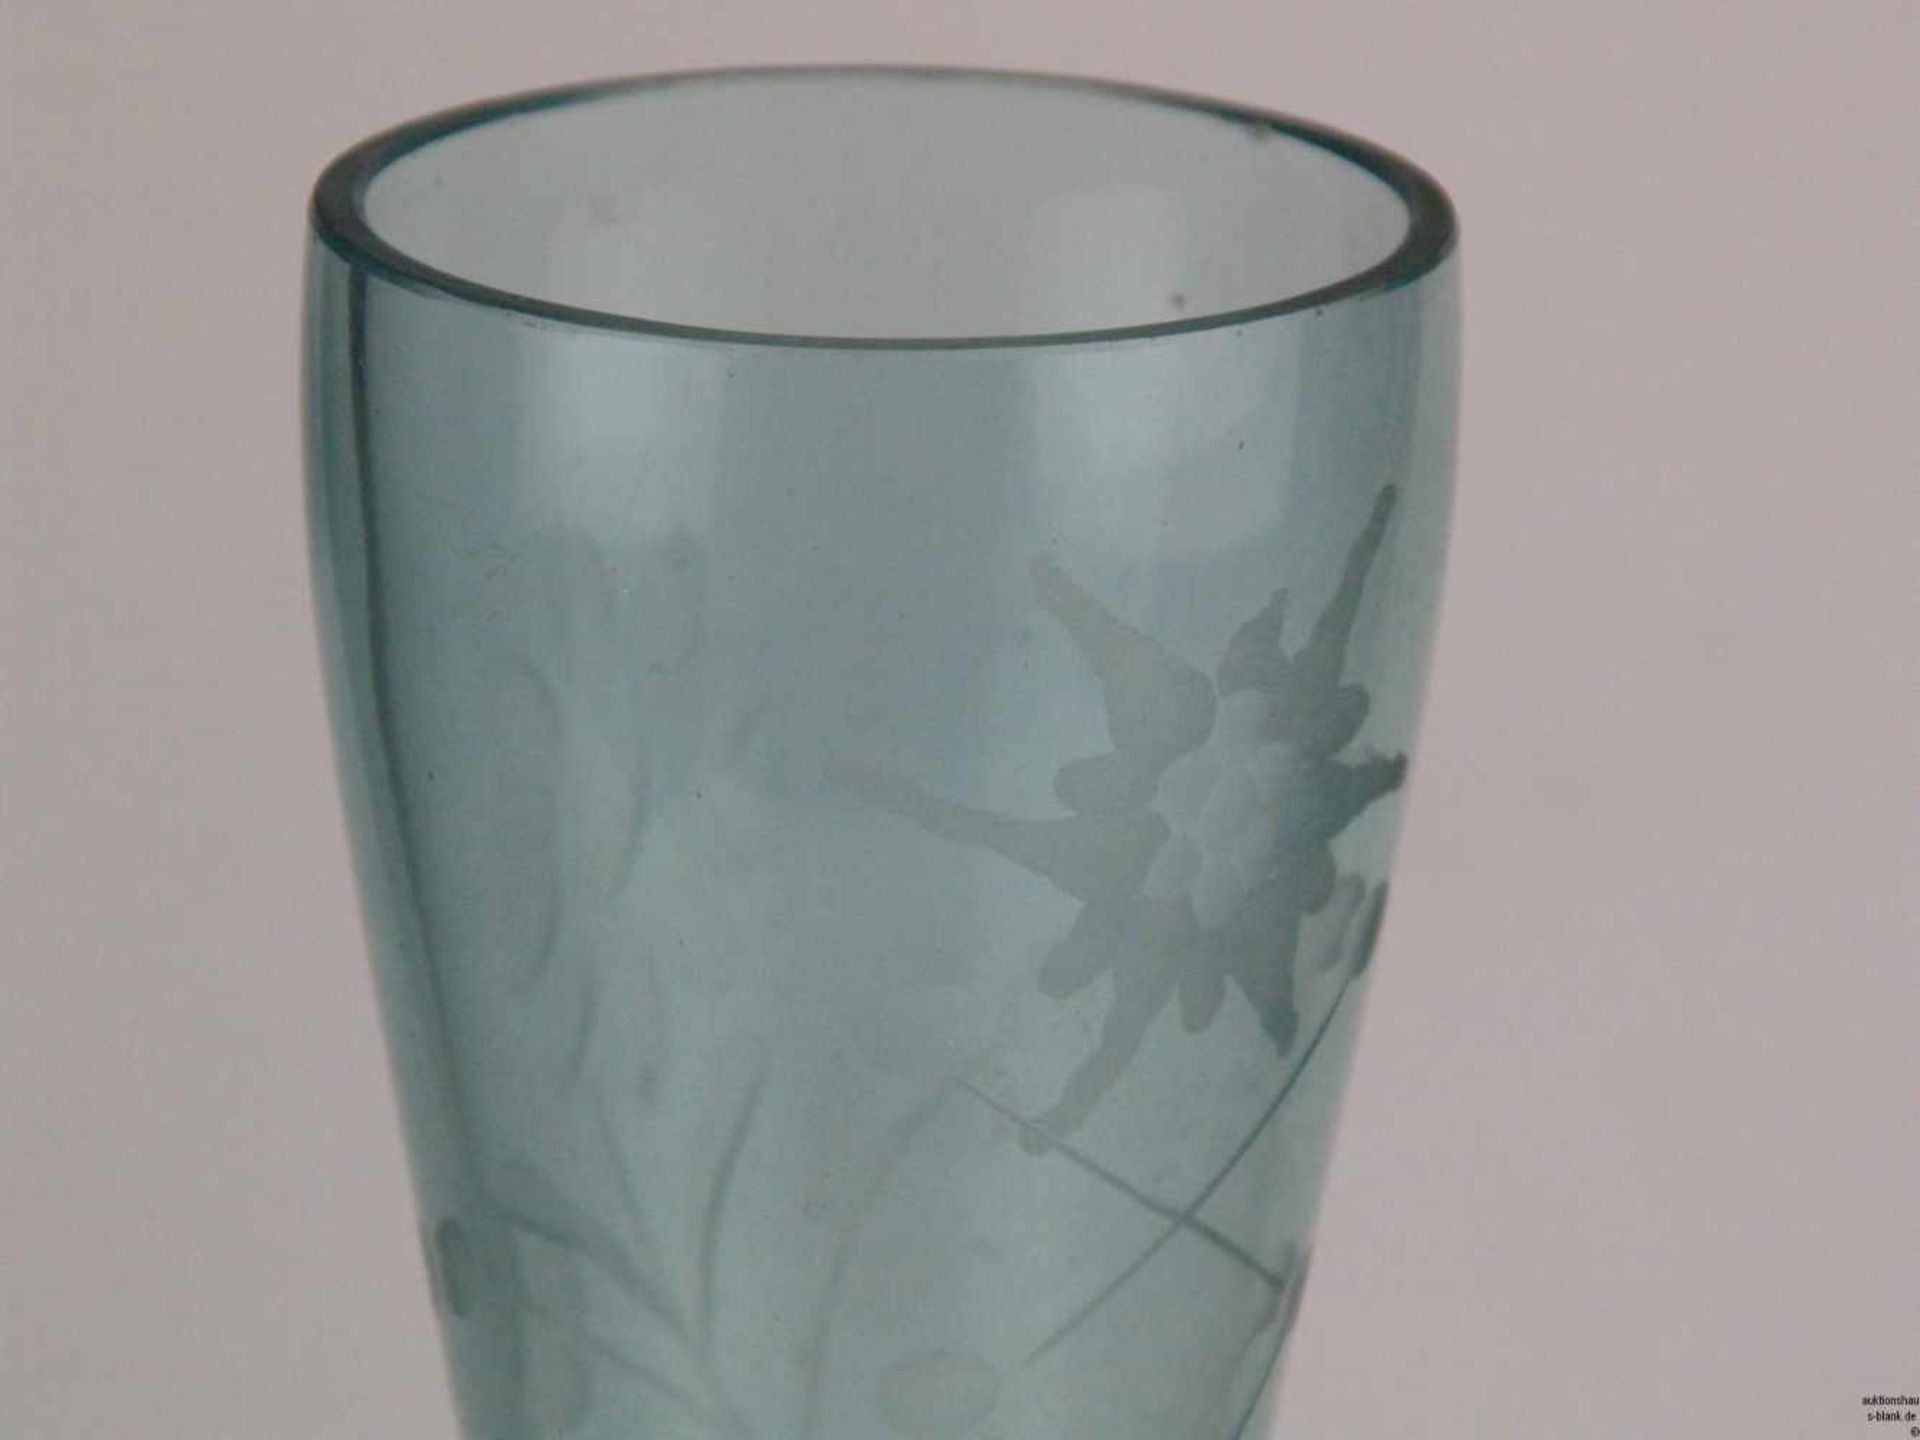 Bierstiefel - aquamarin farbiges Glas, Stiefelform, mit floralem Schliffdekor, Gebrauchsspuren, H. - Bild 2 aus 3